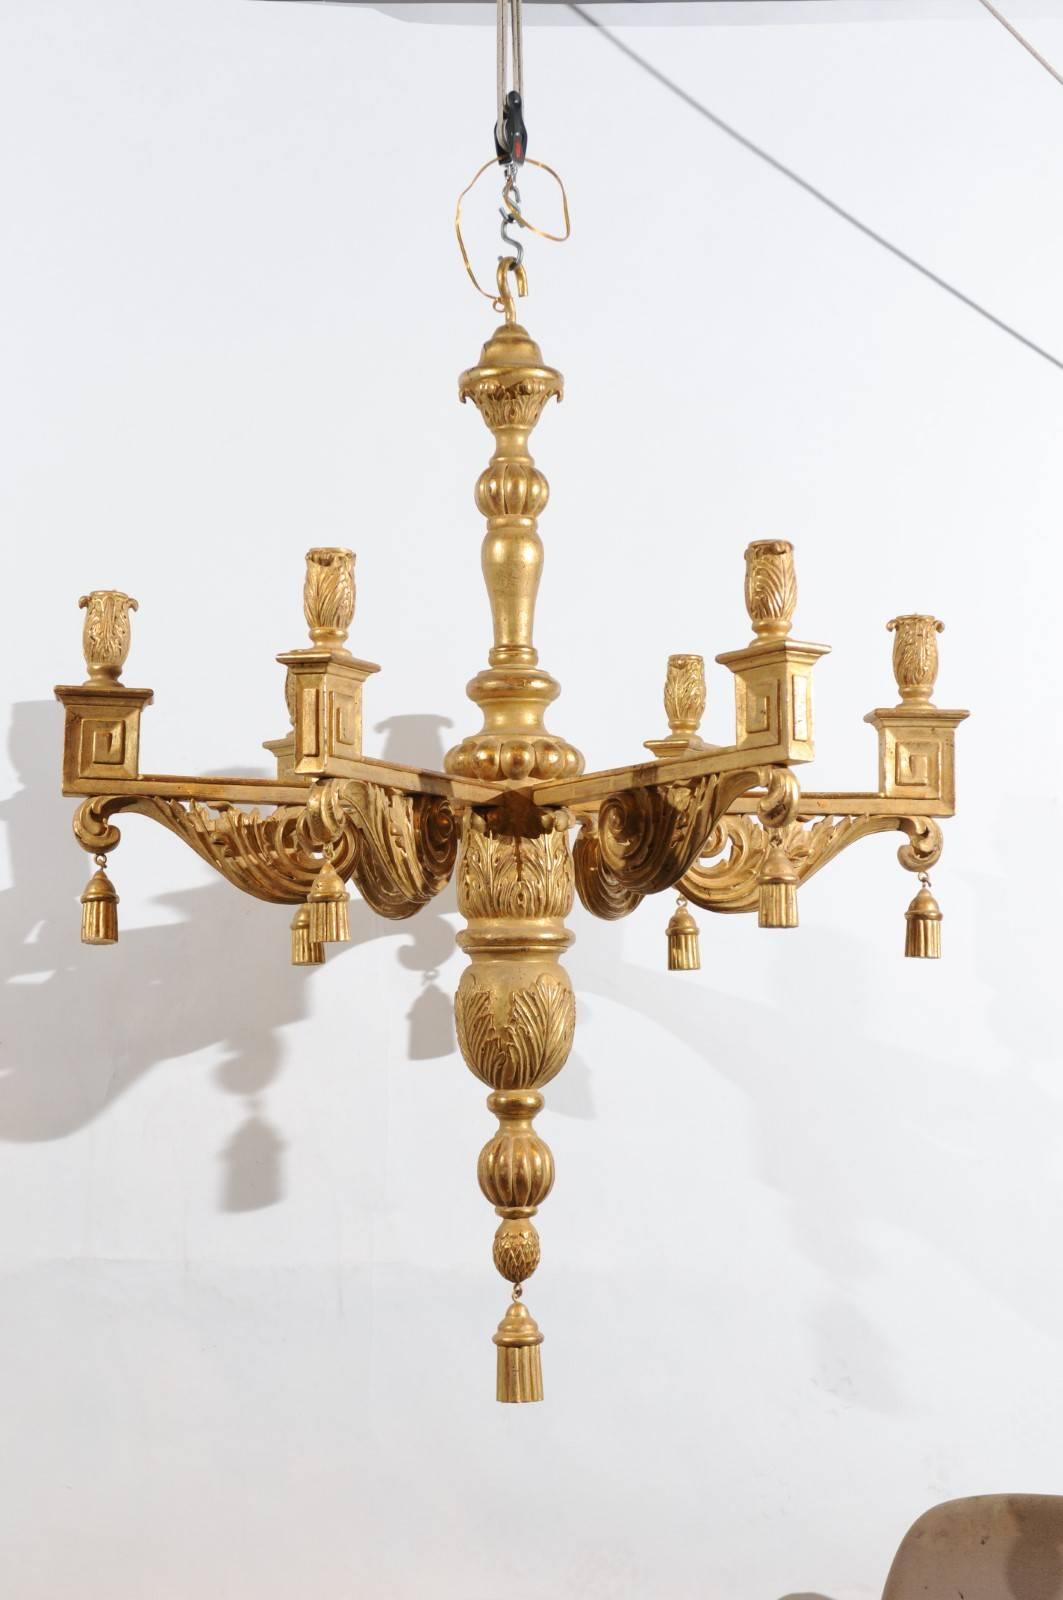 Grand lustre en bois doré de style néoclassique avec glands et 6 lumières.